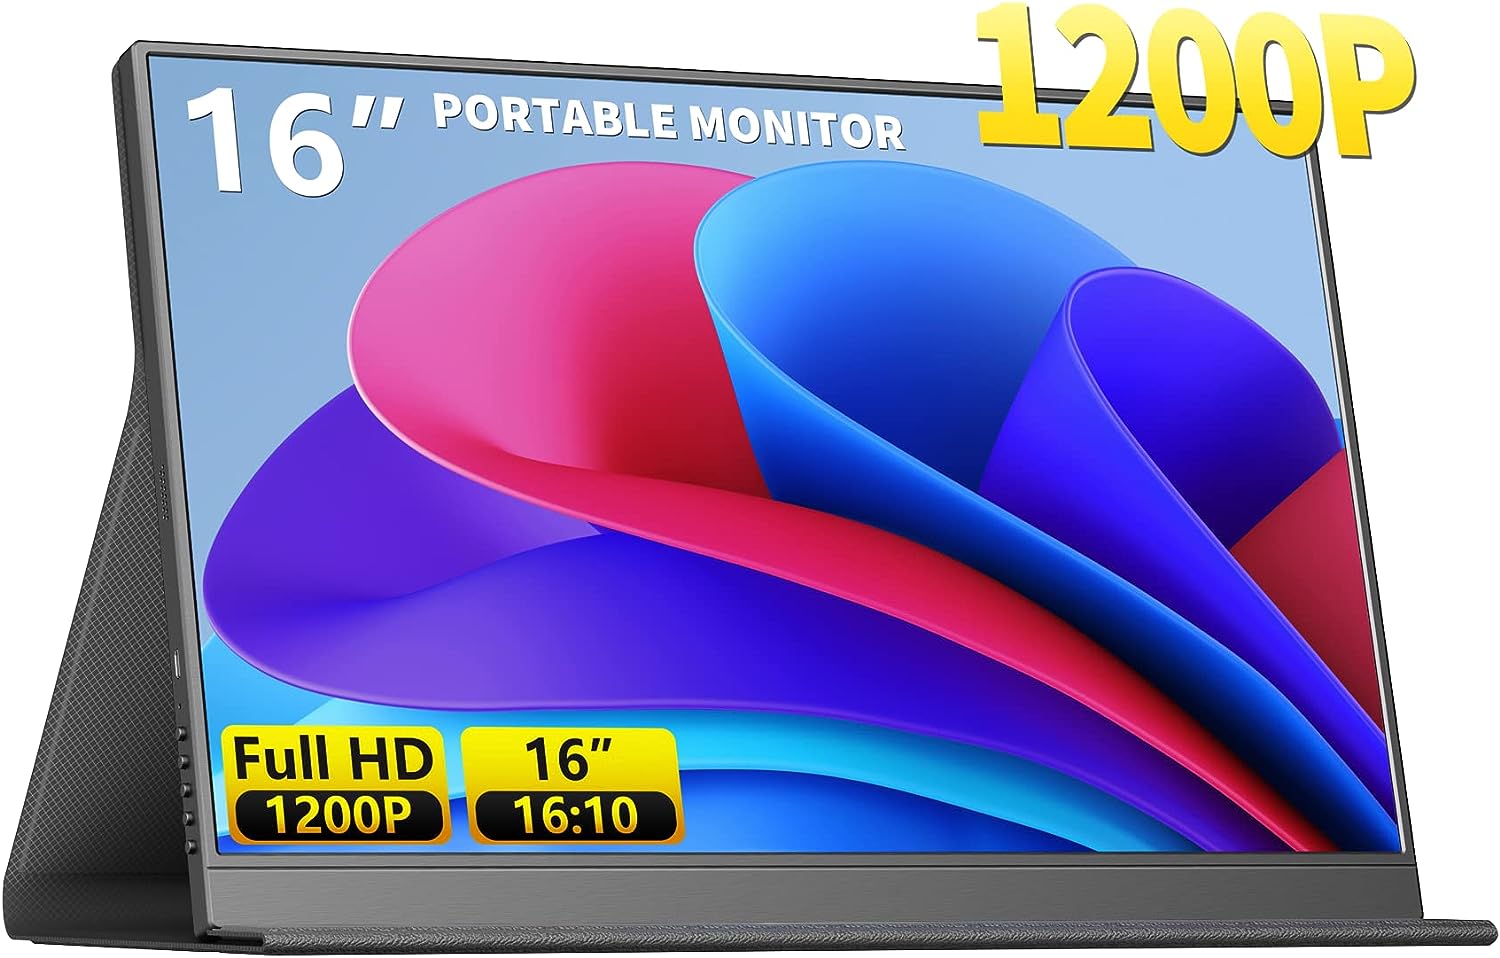 645c9750bef0cd002070d6dc magicraven portable monitor 16